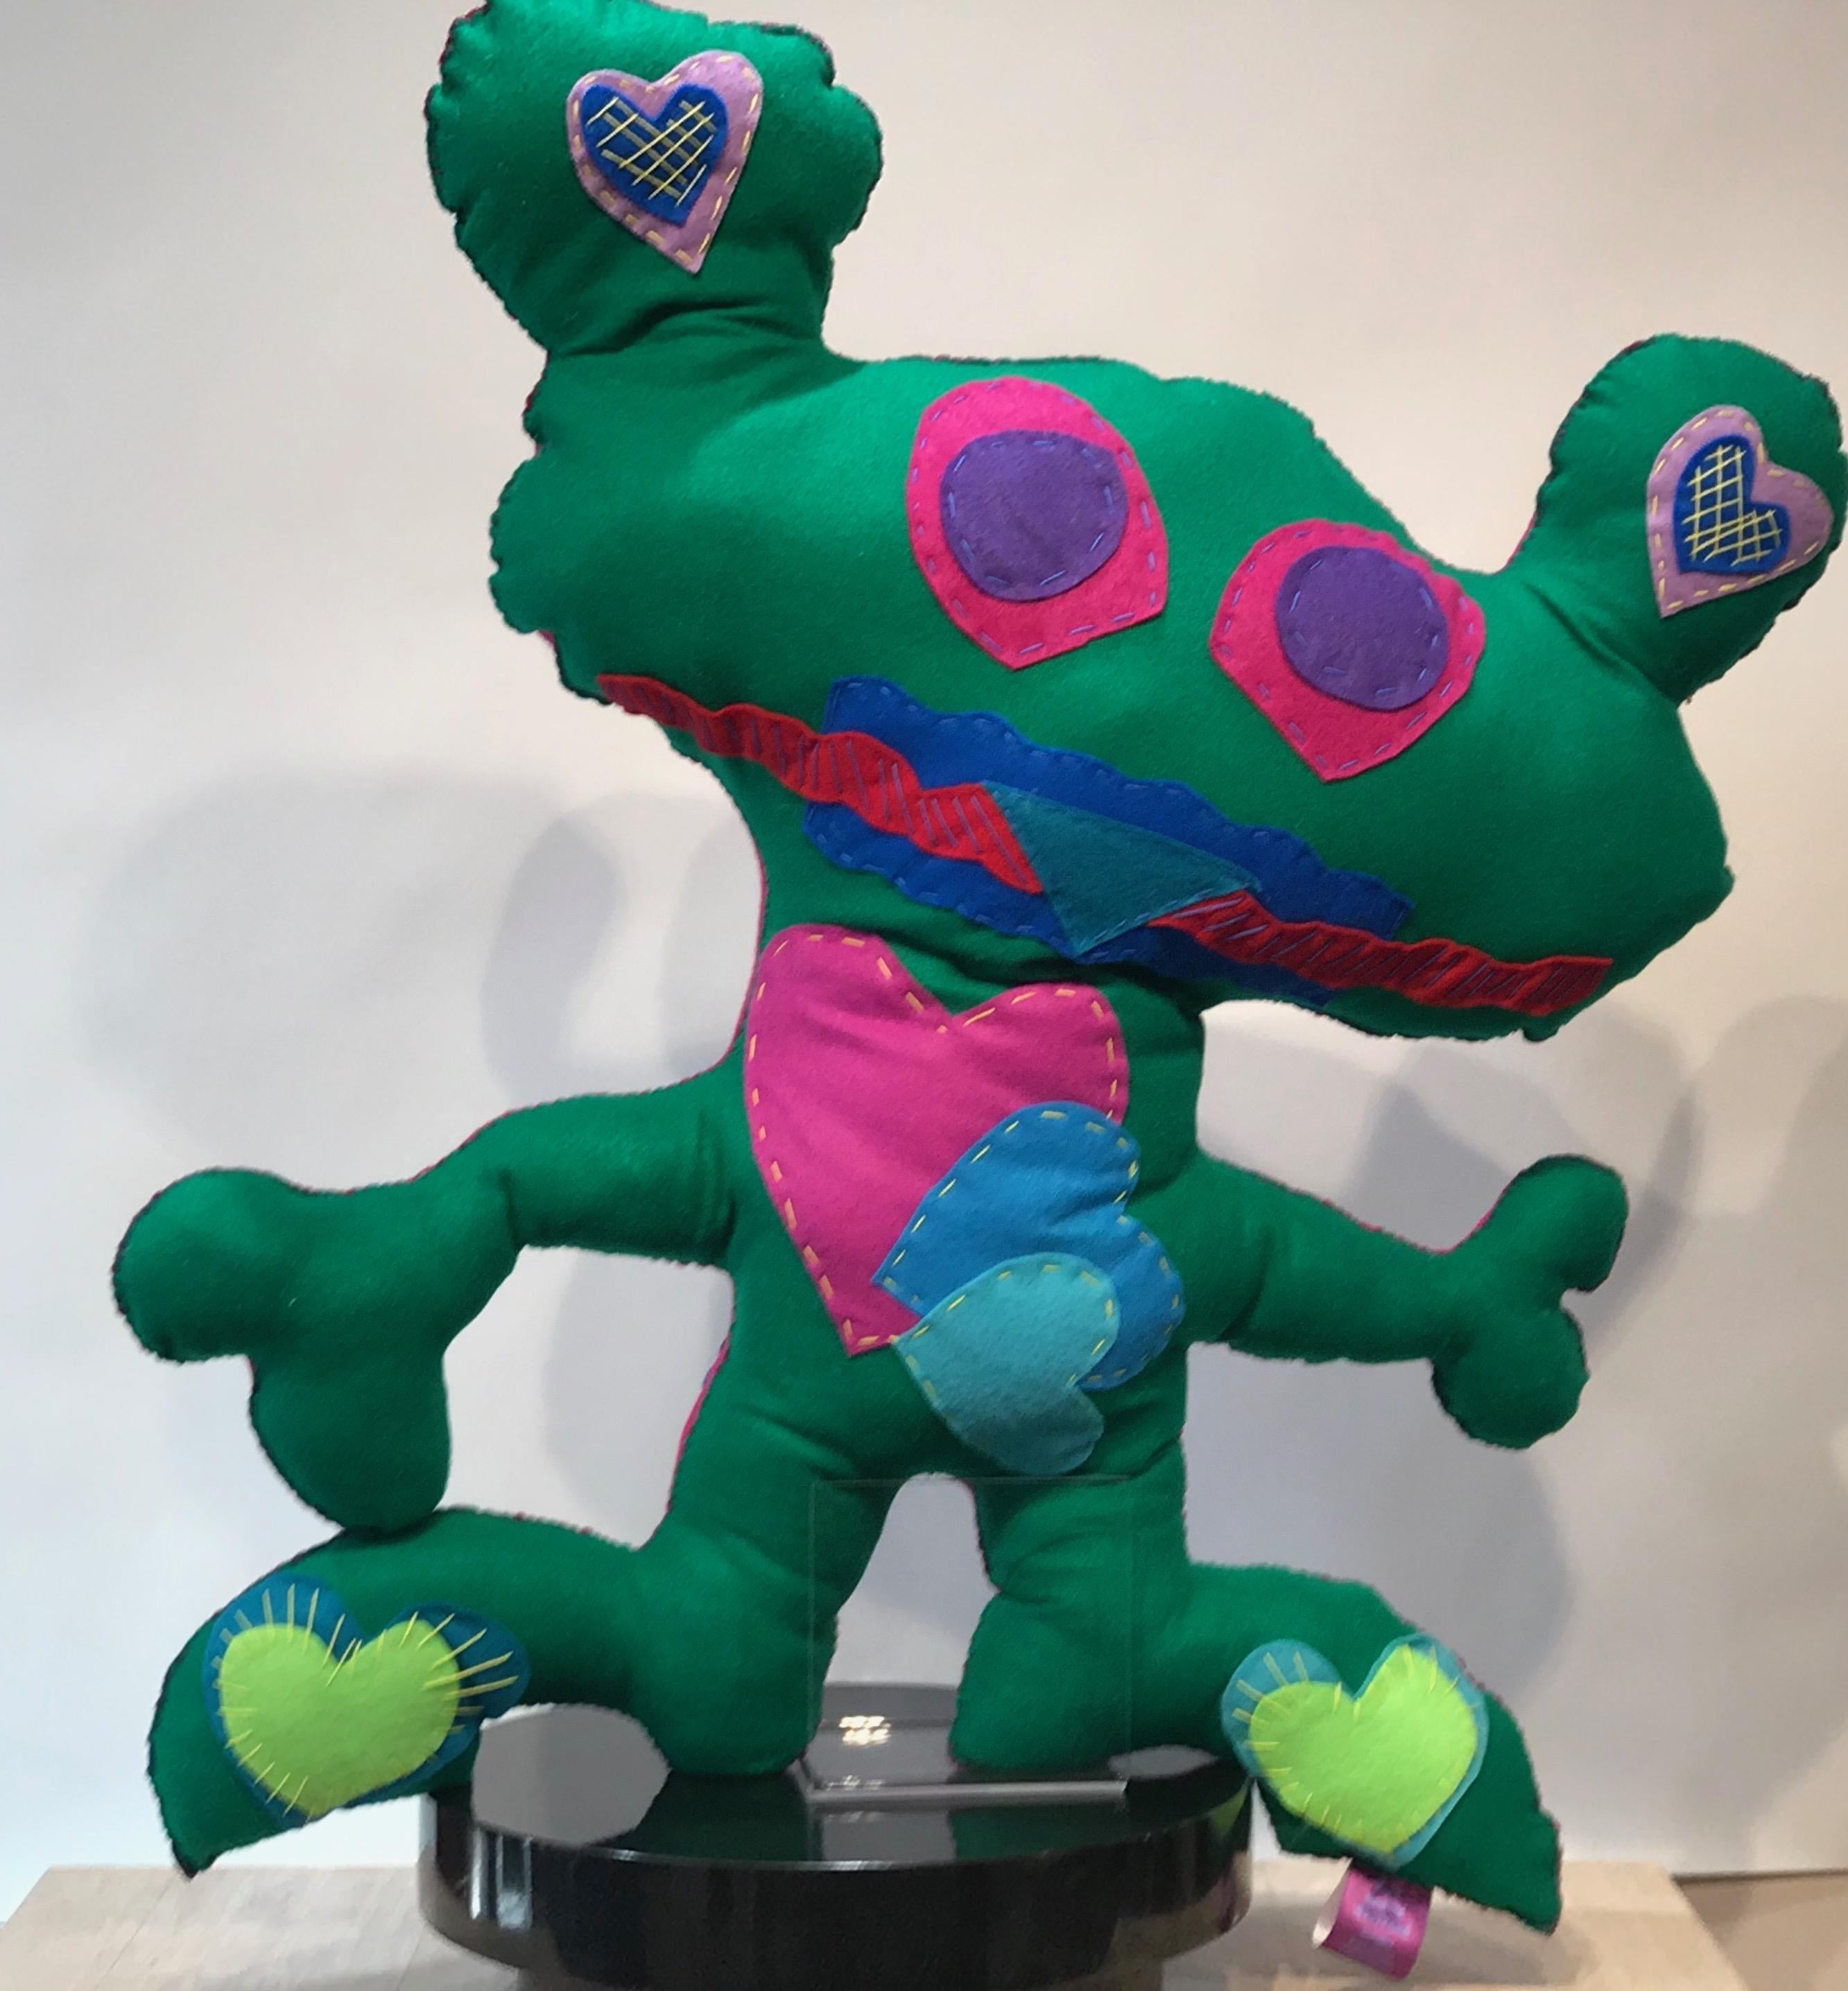 Kerry Green Abstract Sculpture - Giant Green Free Range Critter, soft sculpture, felt, green, pink, hearts